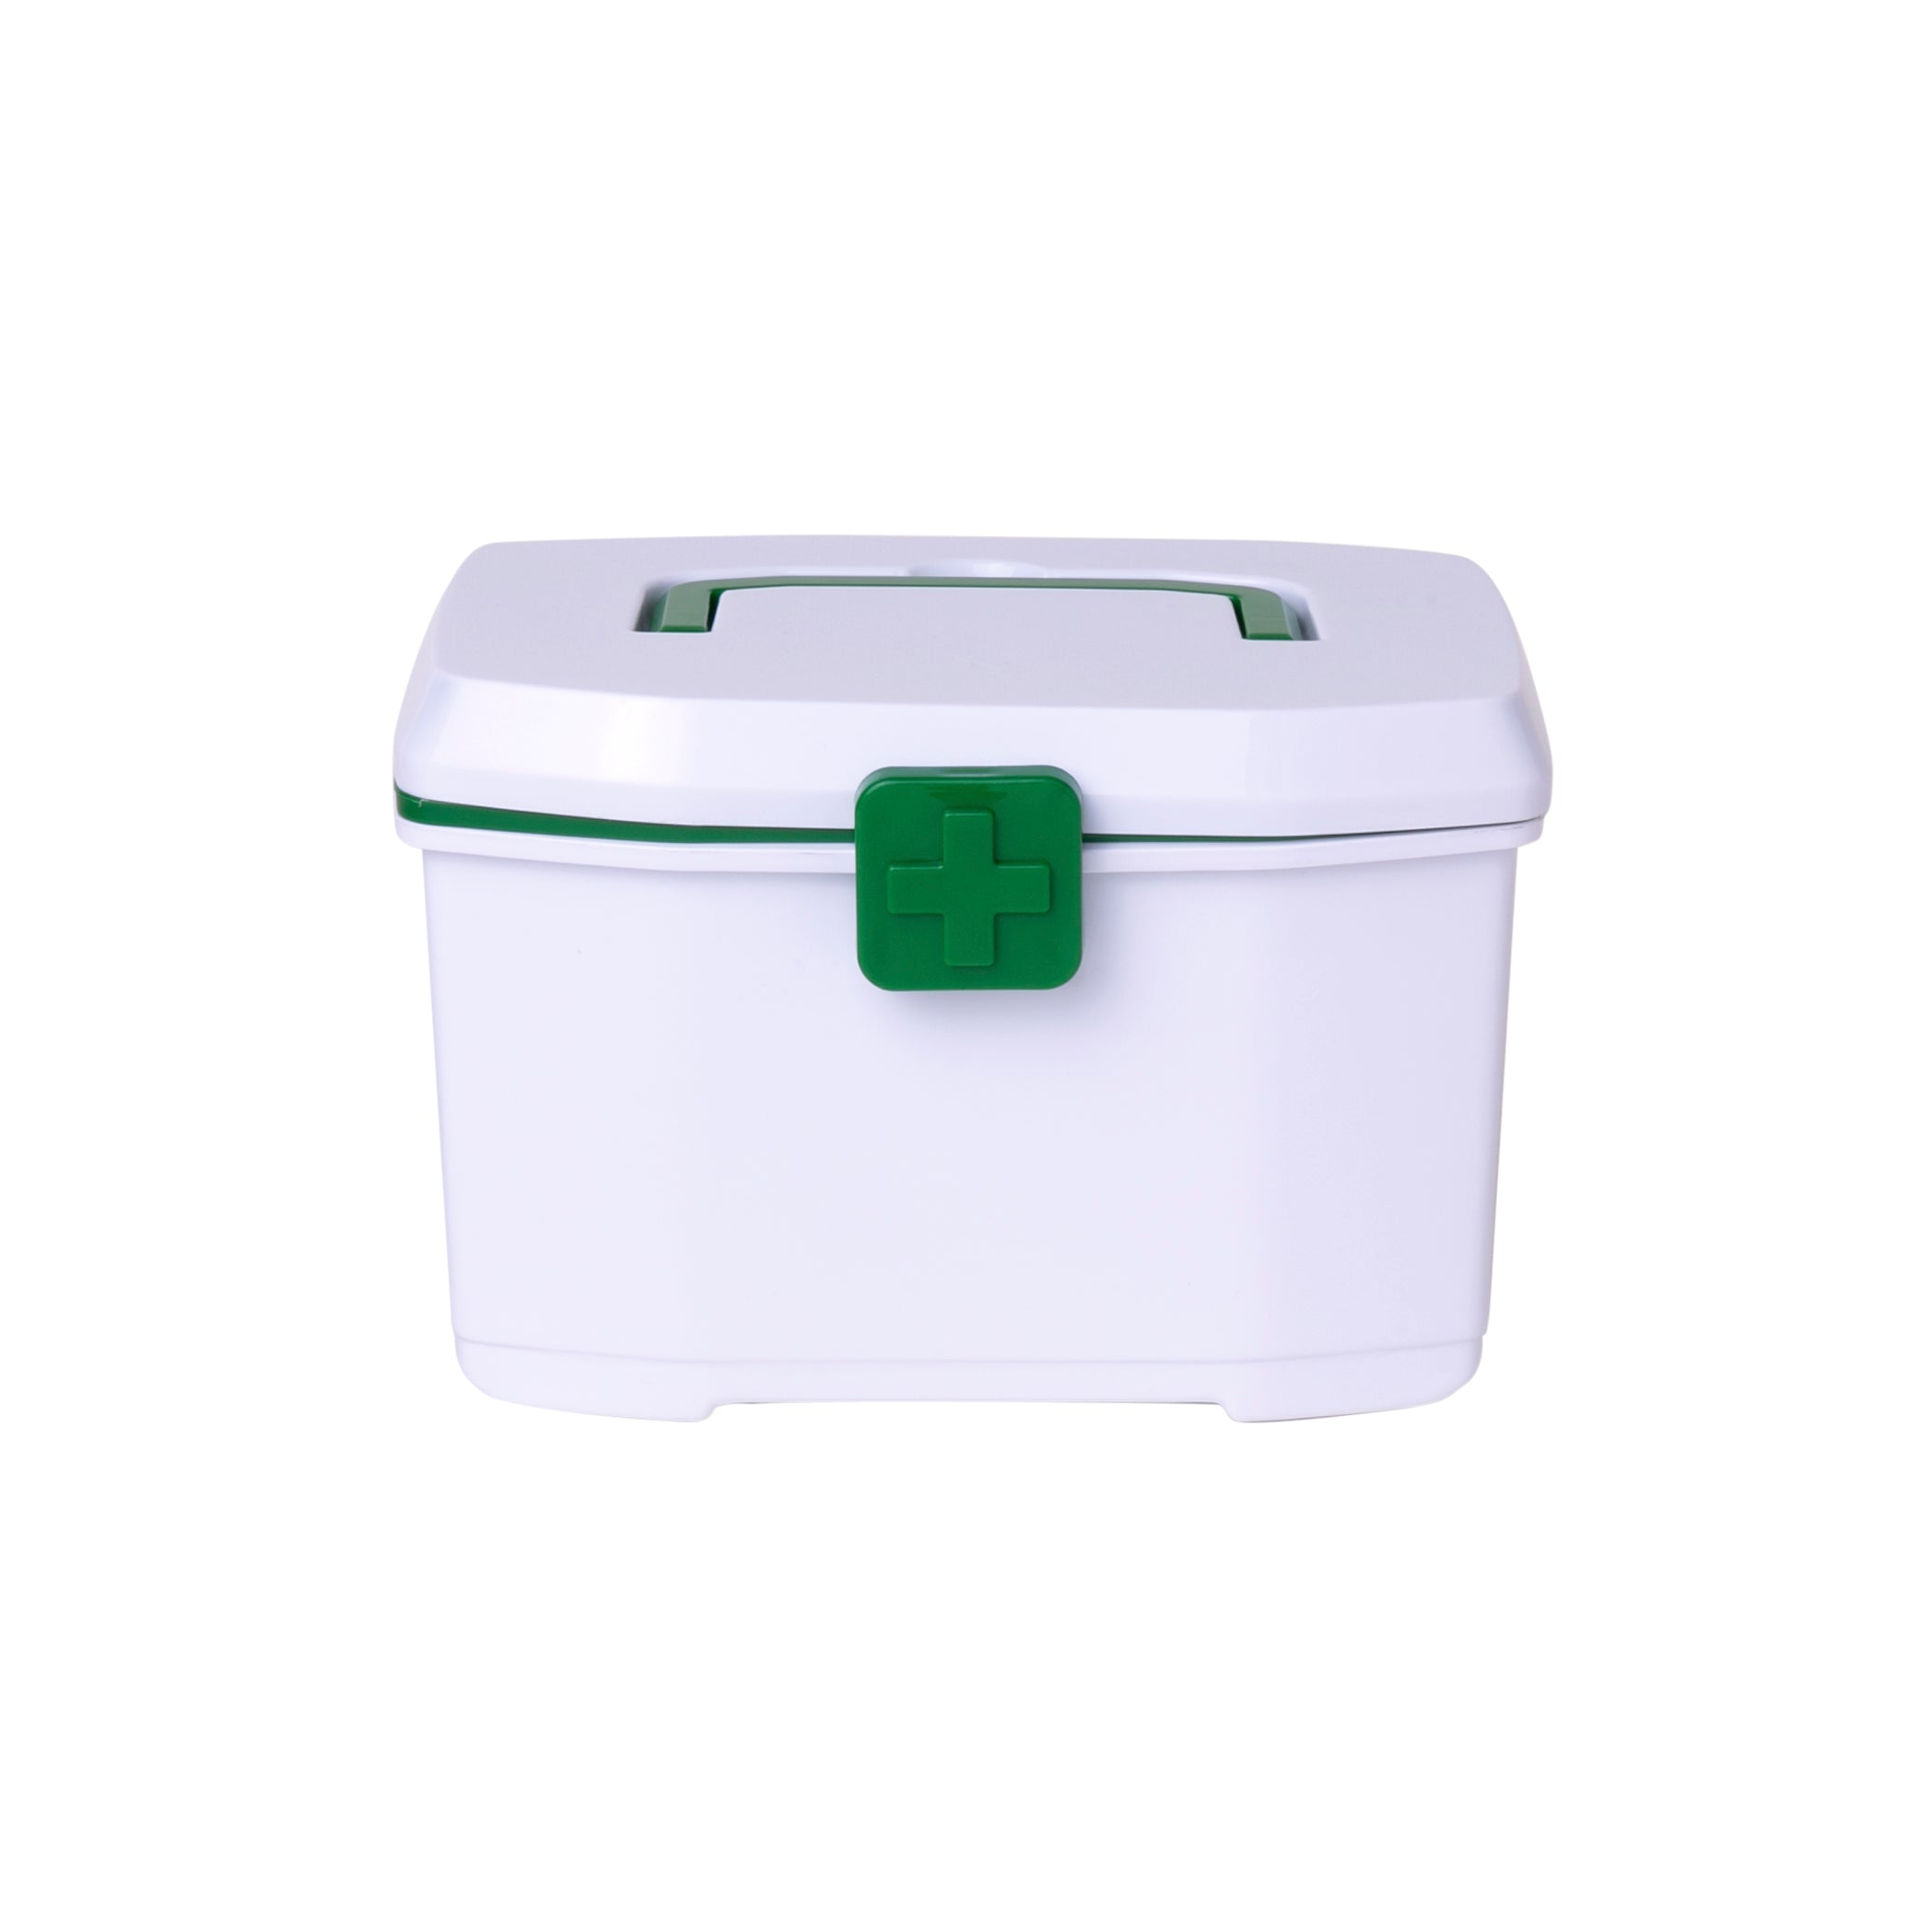 Small Green Medicine Box